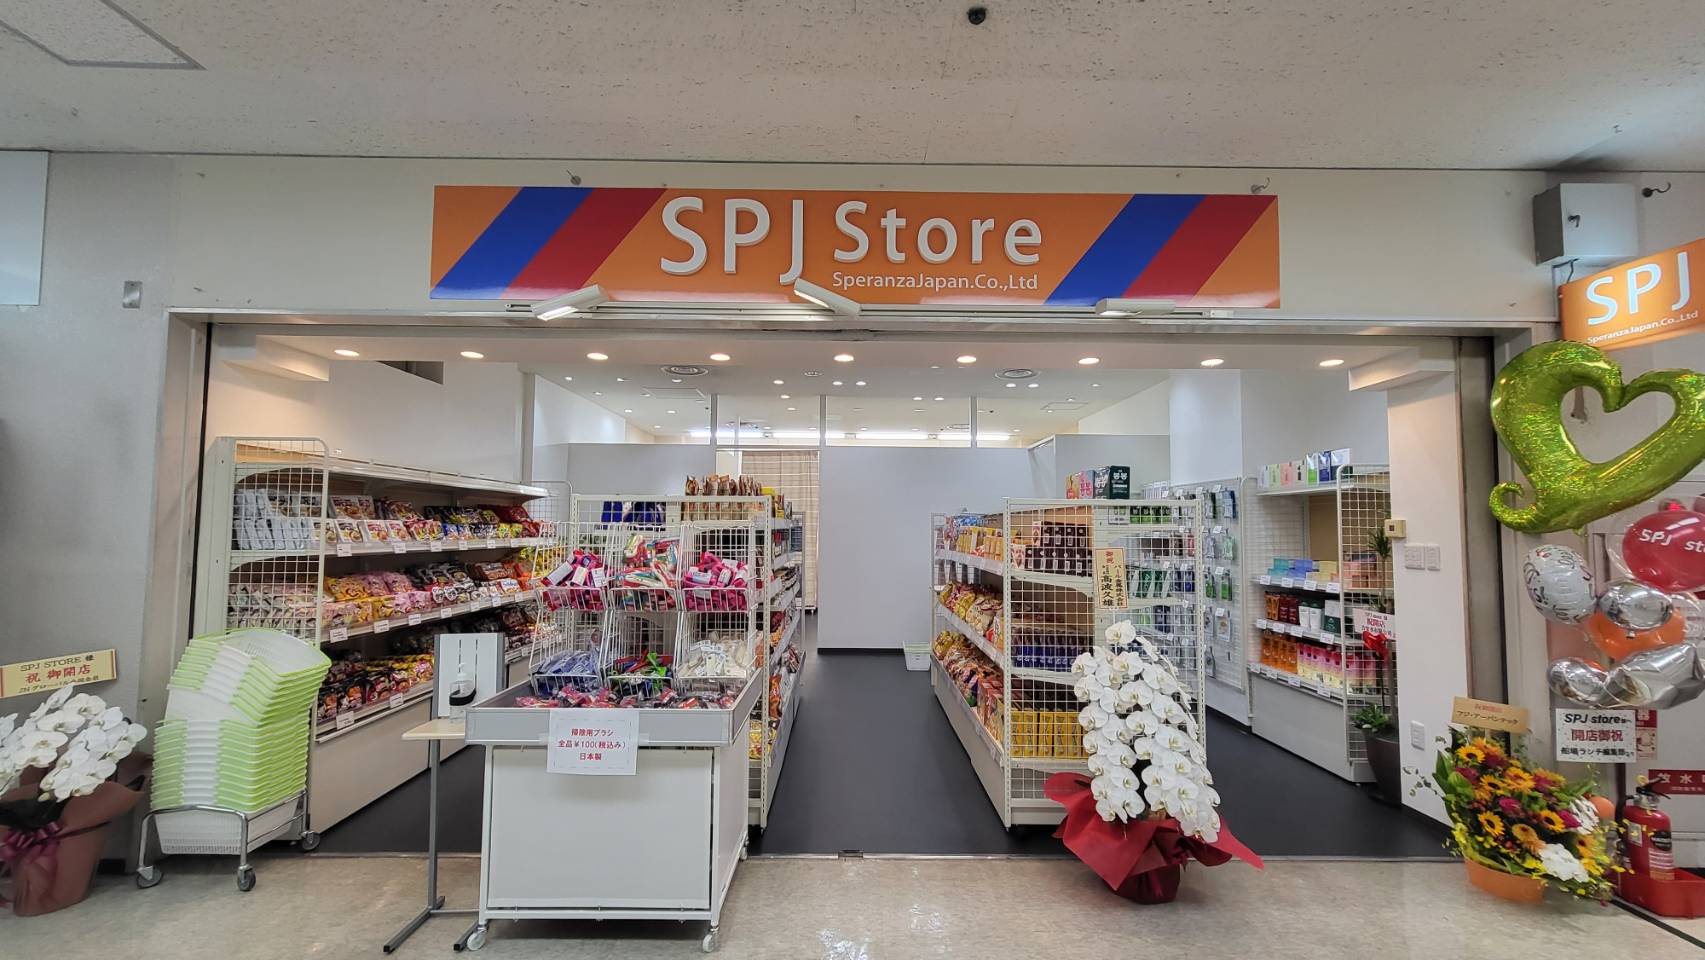 ★61-22SPJ Storeスペランザジャパン